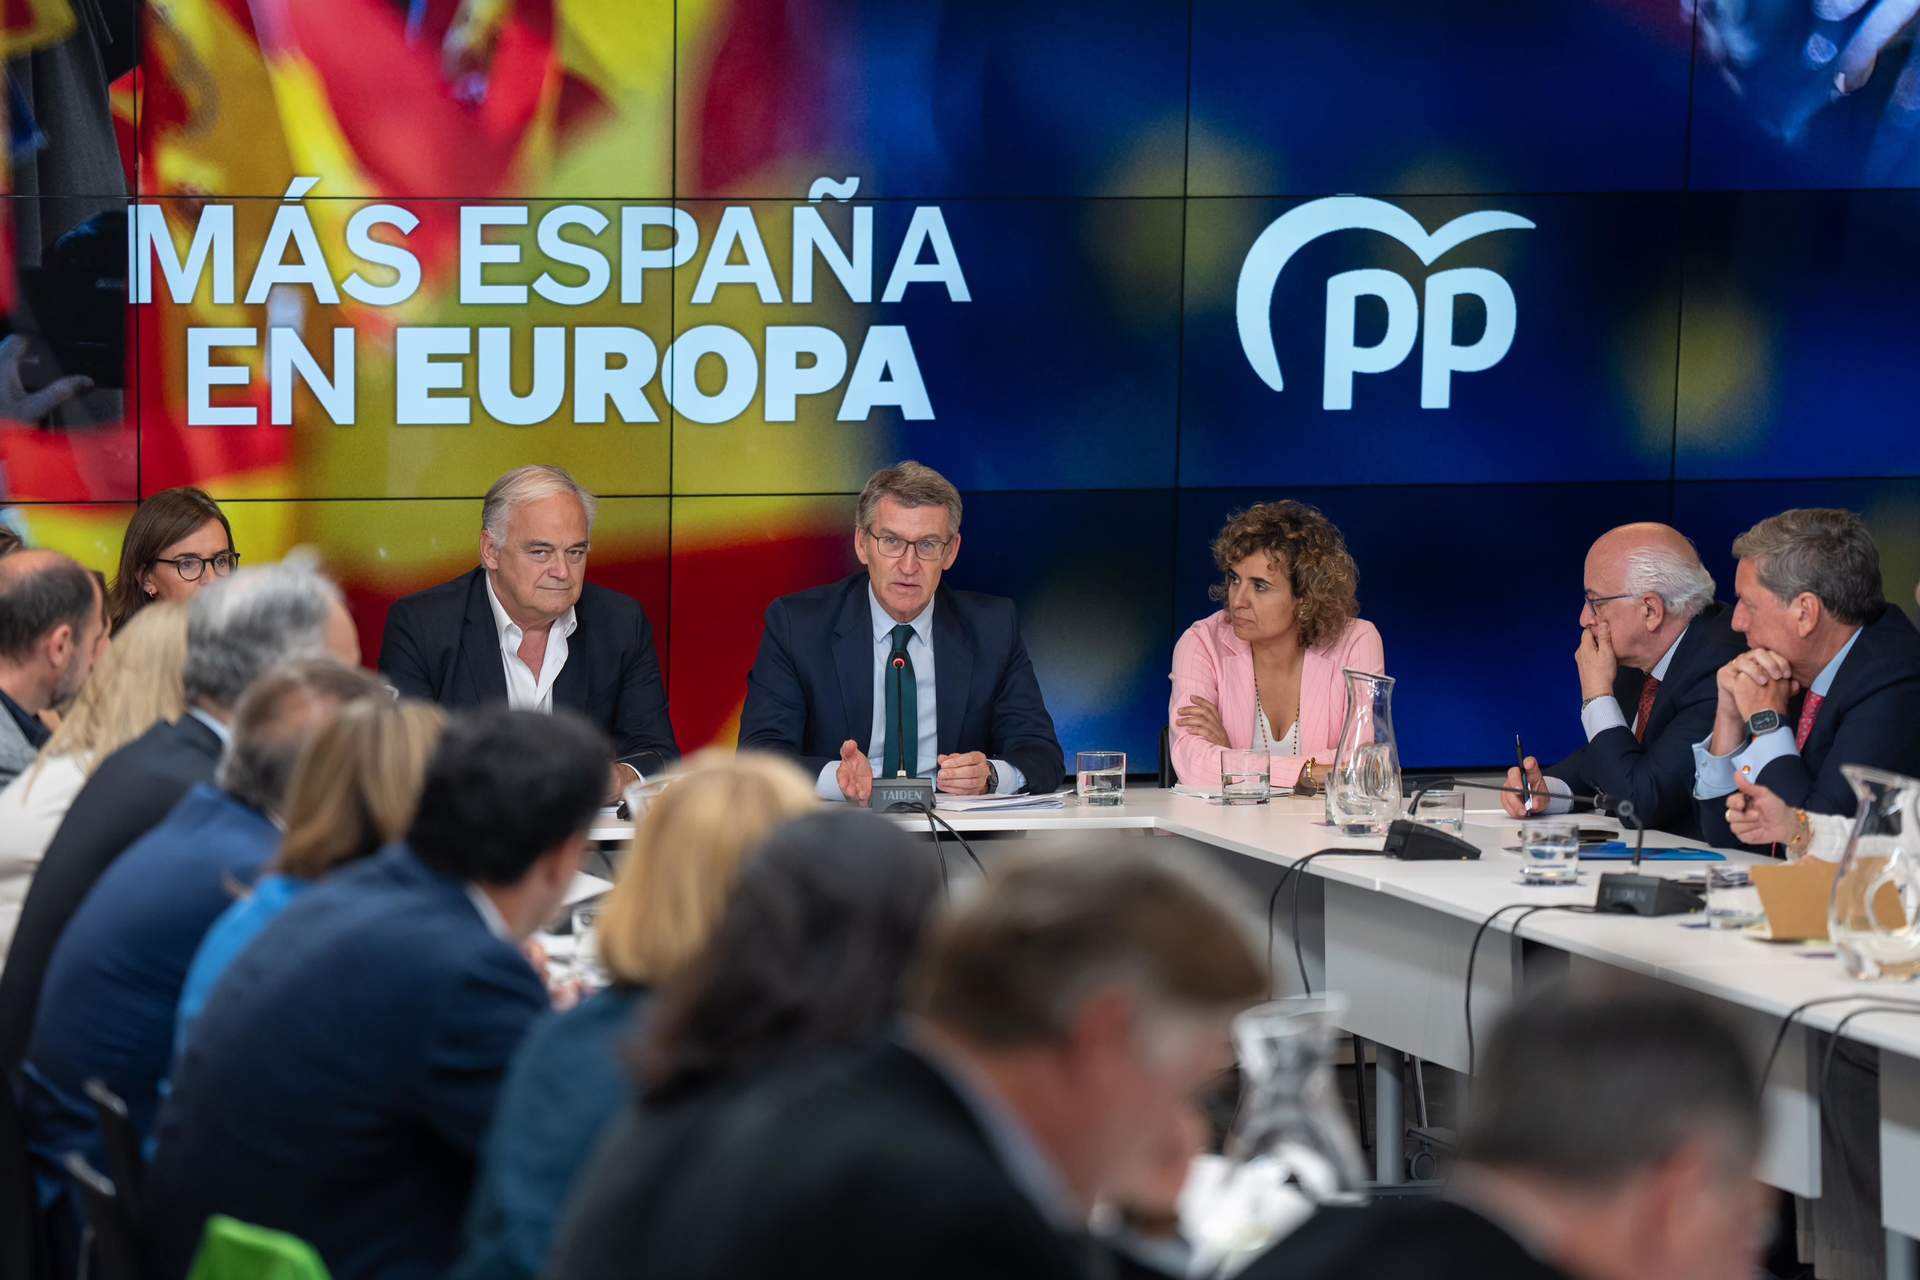 El PP elige 'Tu voto es la respuesta' como lema de campaña en europeas para contestar a Sánchez: 